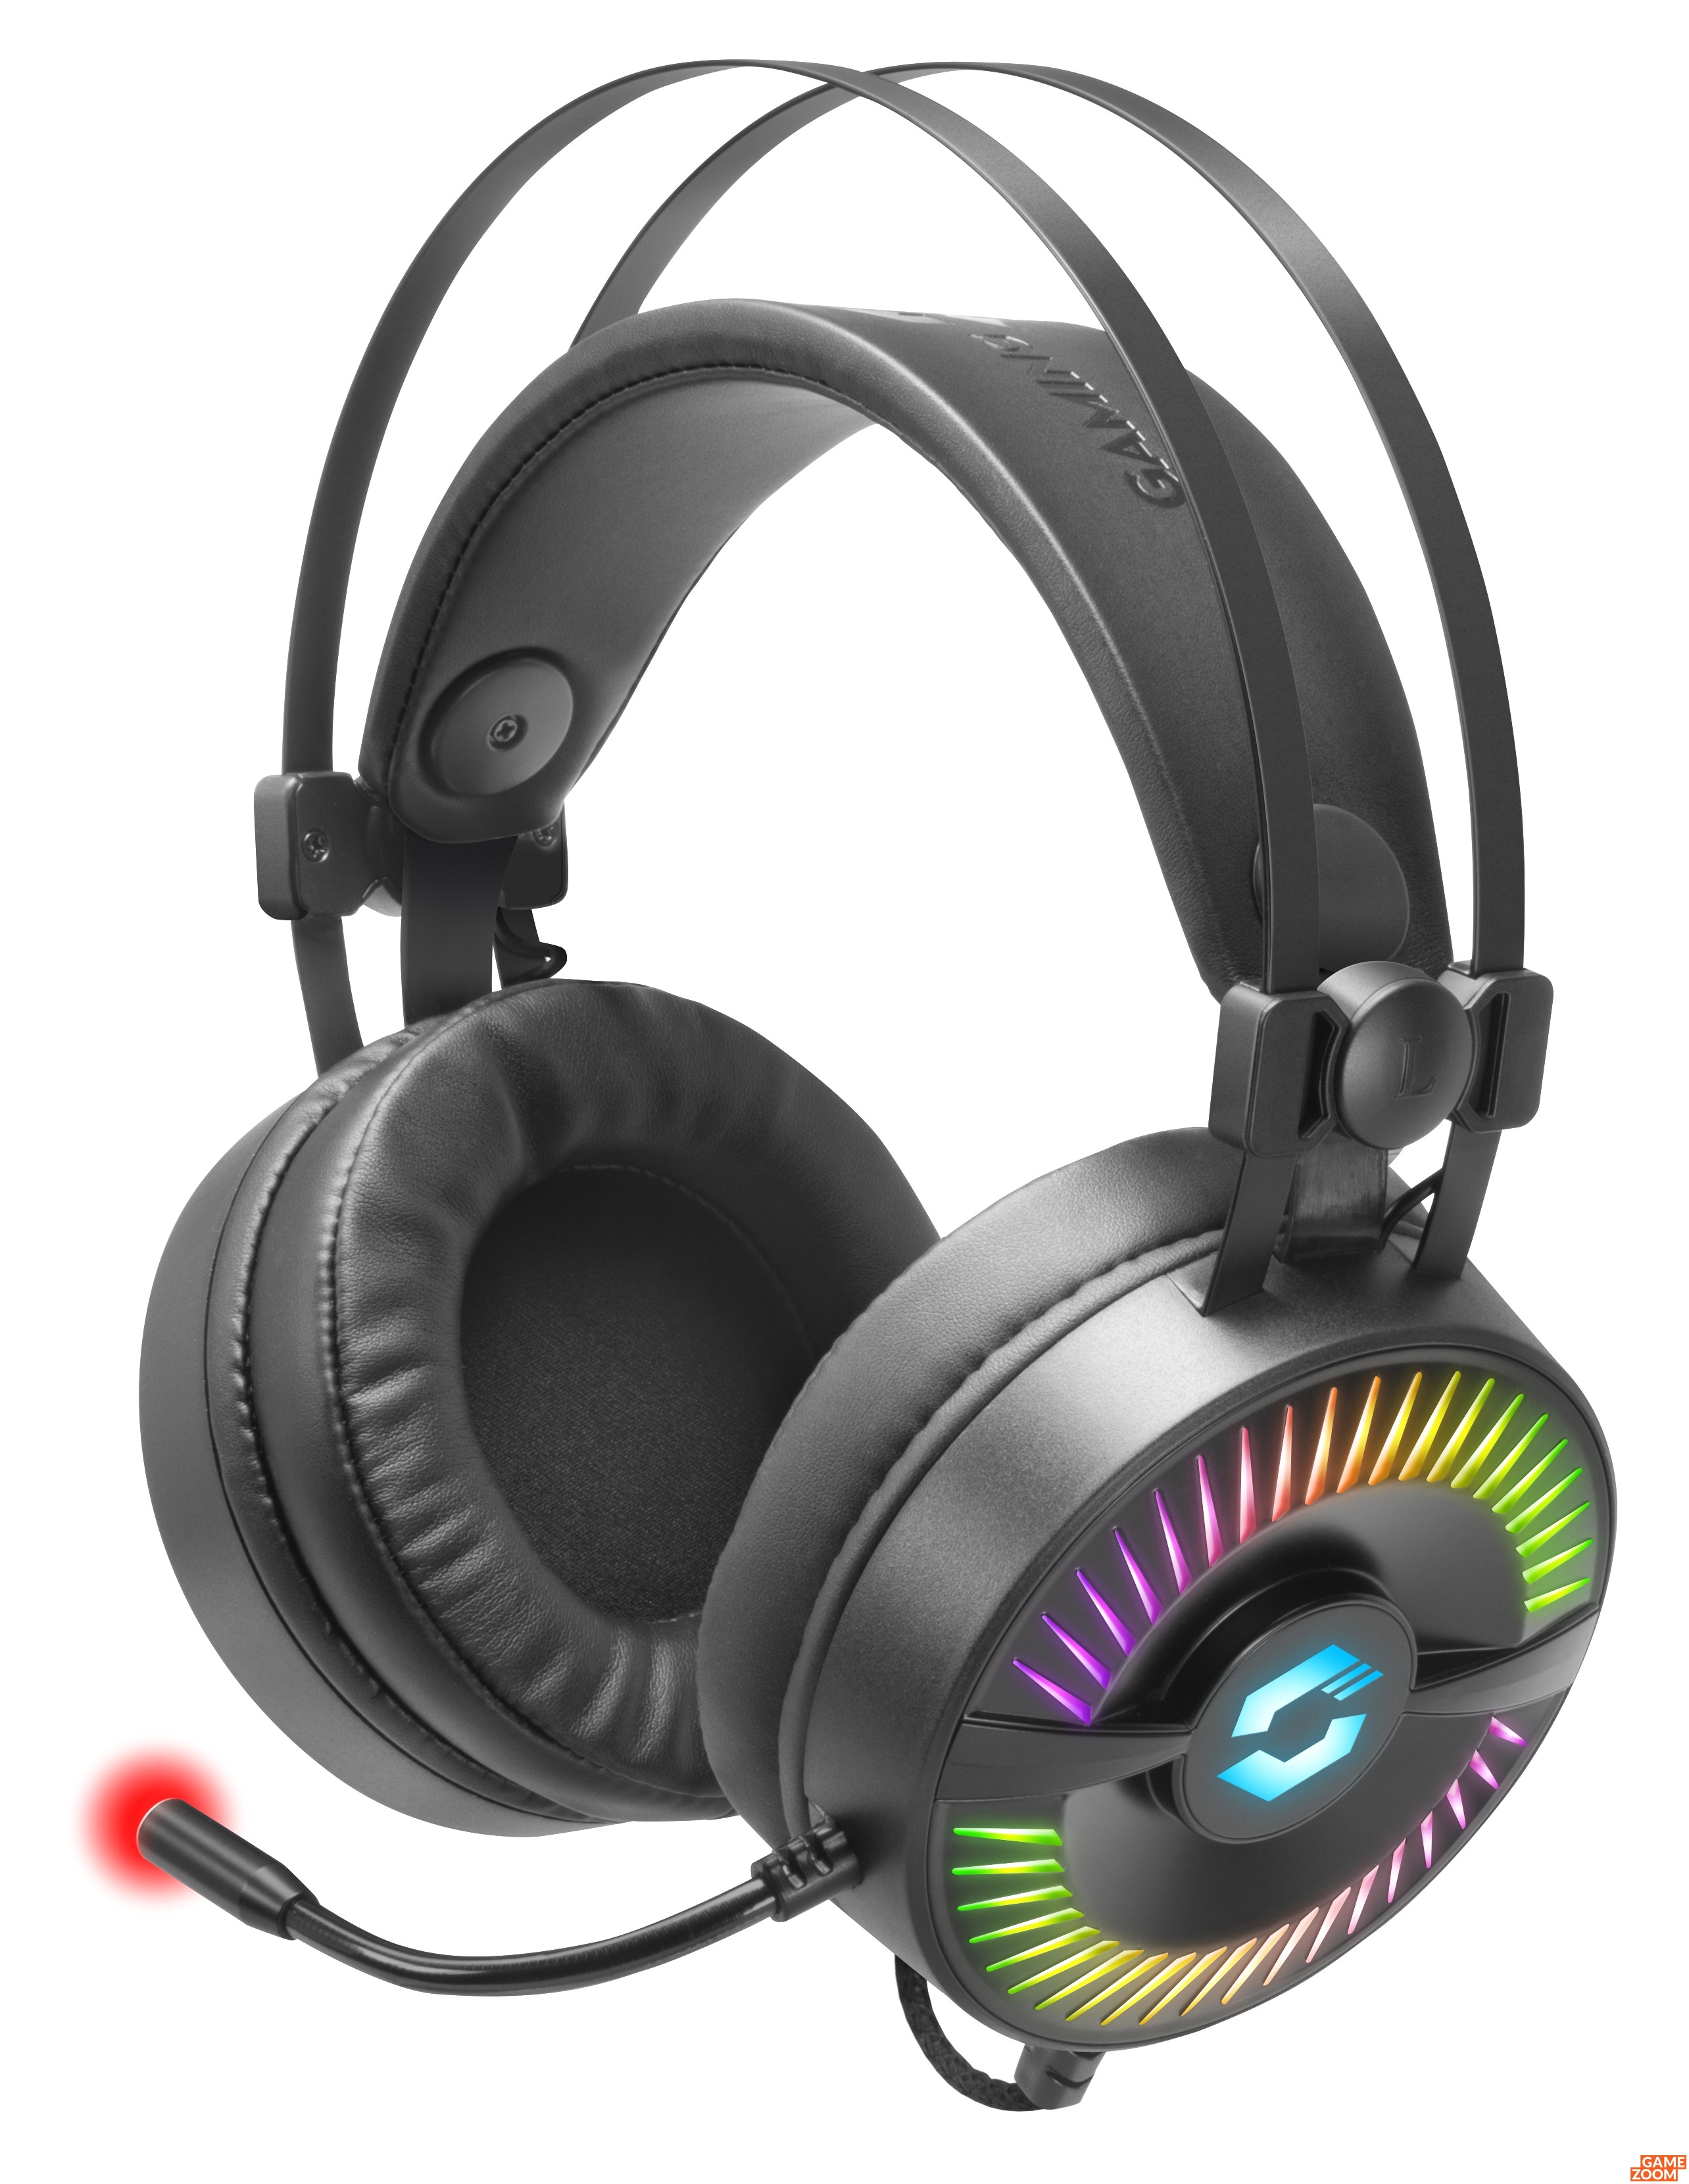 und mit Vibrationen Speedlink: spektakulärer RGB-Beleuchtung Gaming-Headset